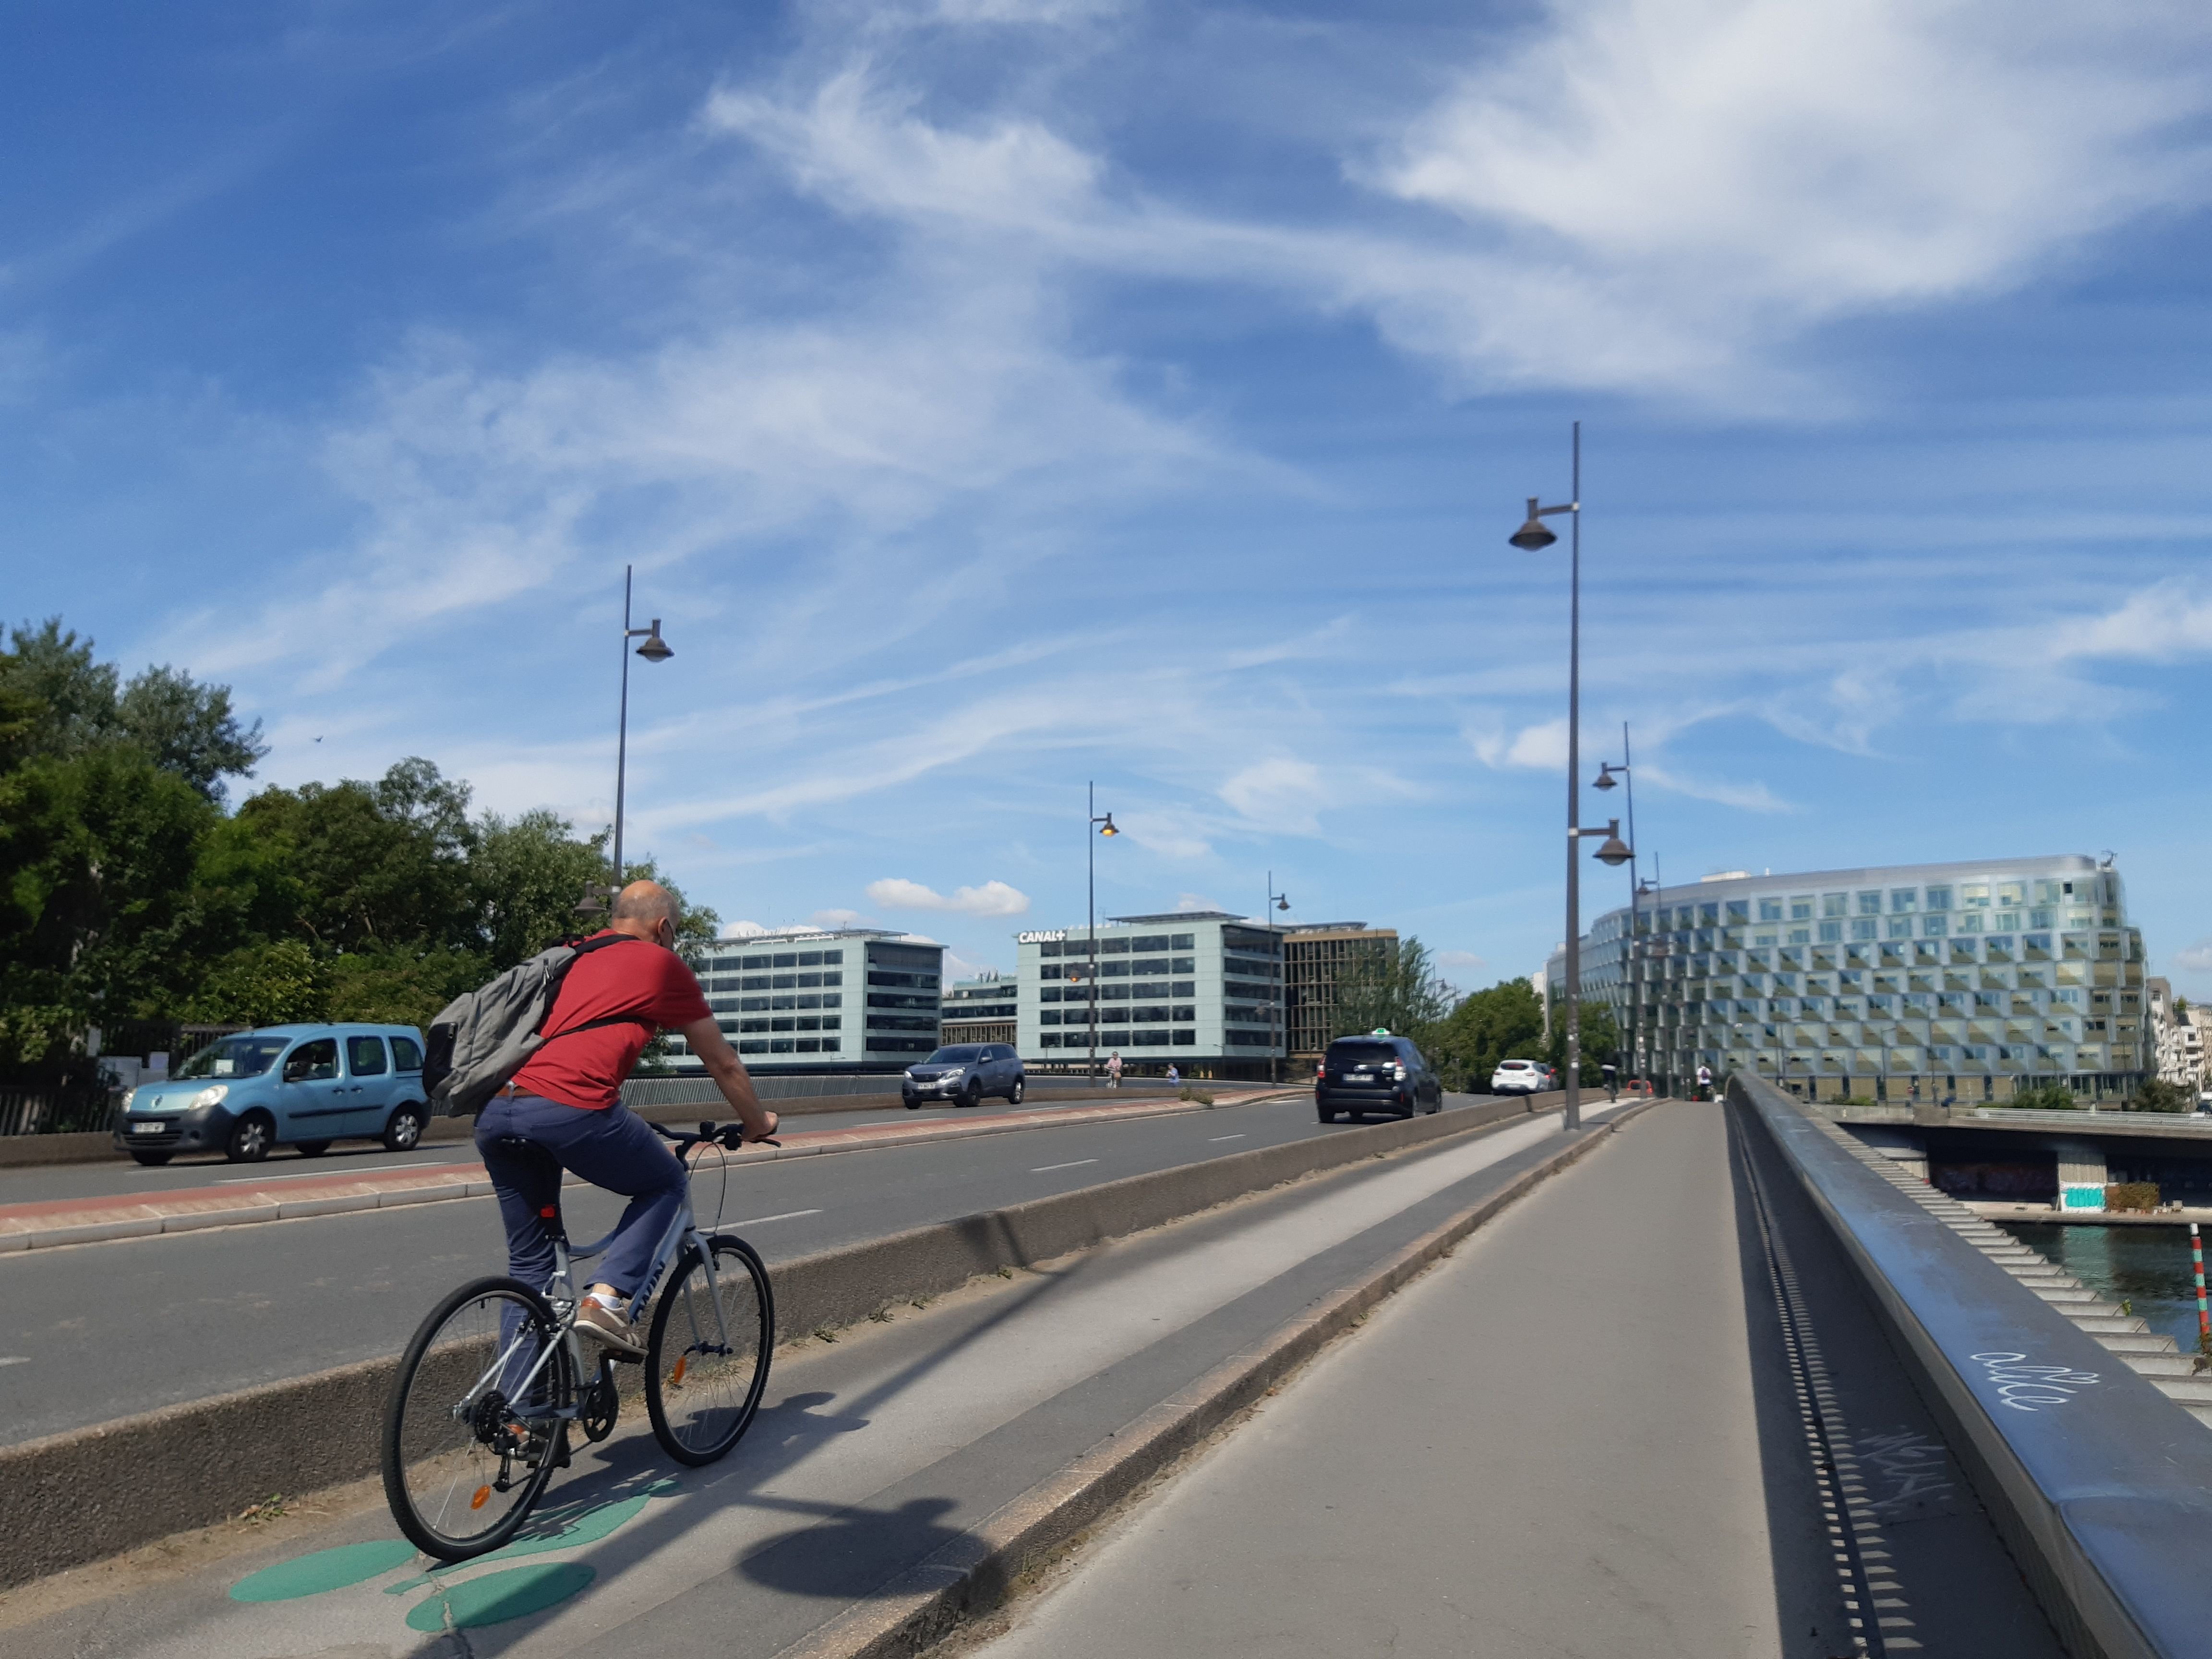 Boulogne-Billancourt, 6 juillet 2022. Sur le pont d'Issy, en septembre 2020, jusqu'à 64 344 cyclistes ont été comptés en un mois et presque autant en septembre 2021. C'est le lieu le plus fréquenté de GPSO par les deux-roues avec la route de Vaugirard à Meudon. Et c'est également au bout de ce pont qu'est décédé une jeune cycliste en septembre 2021. LP/M.L.